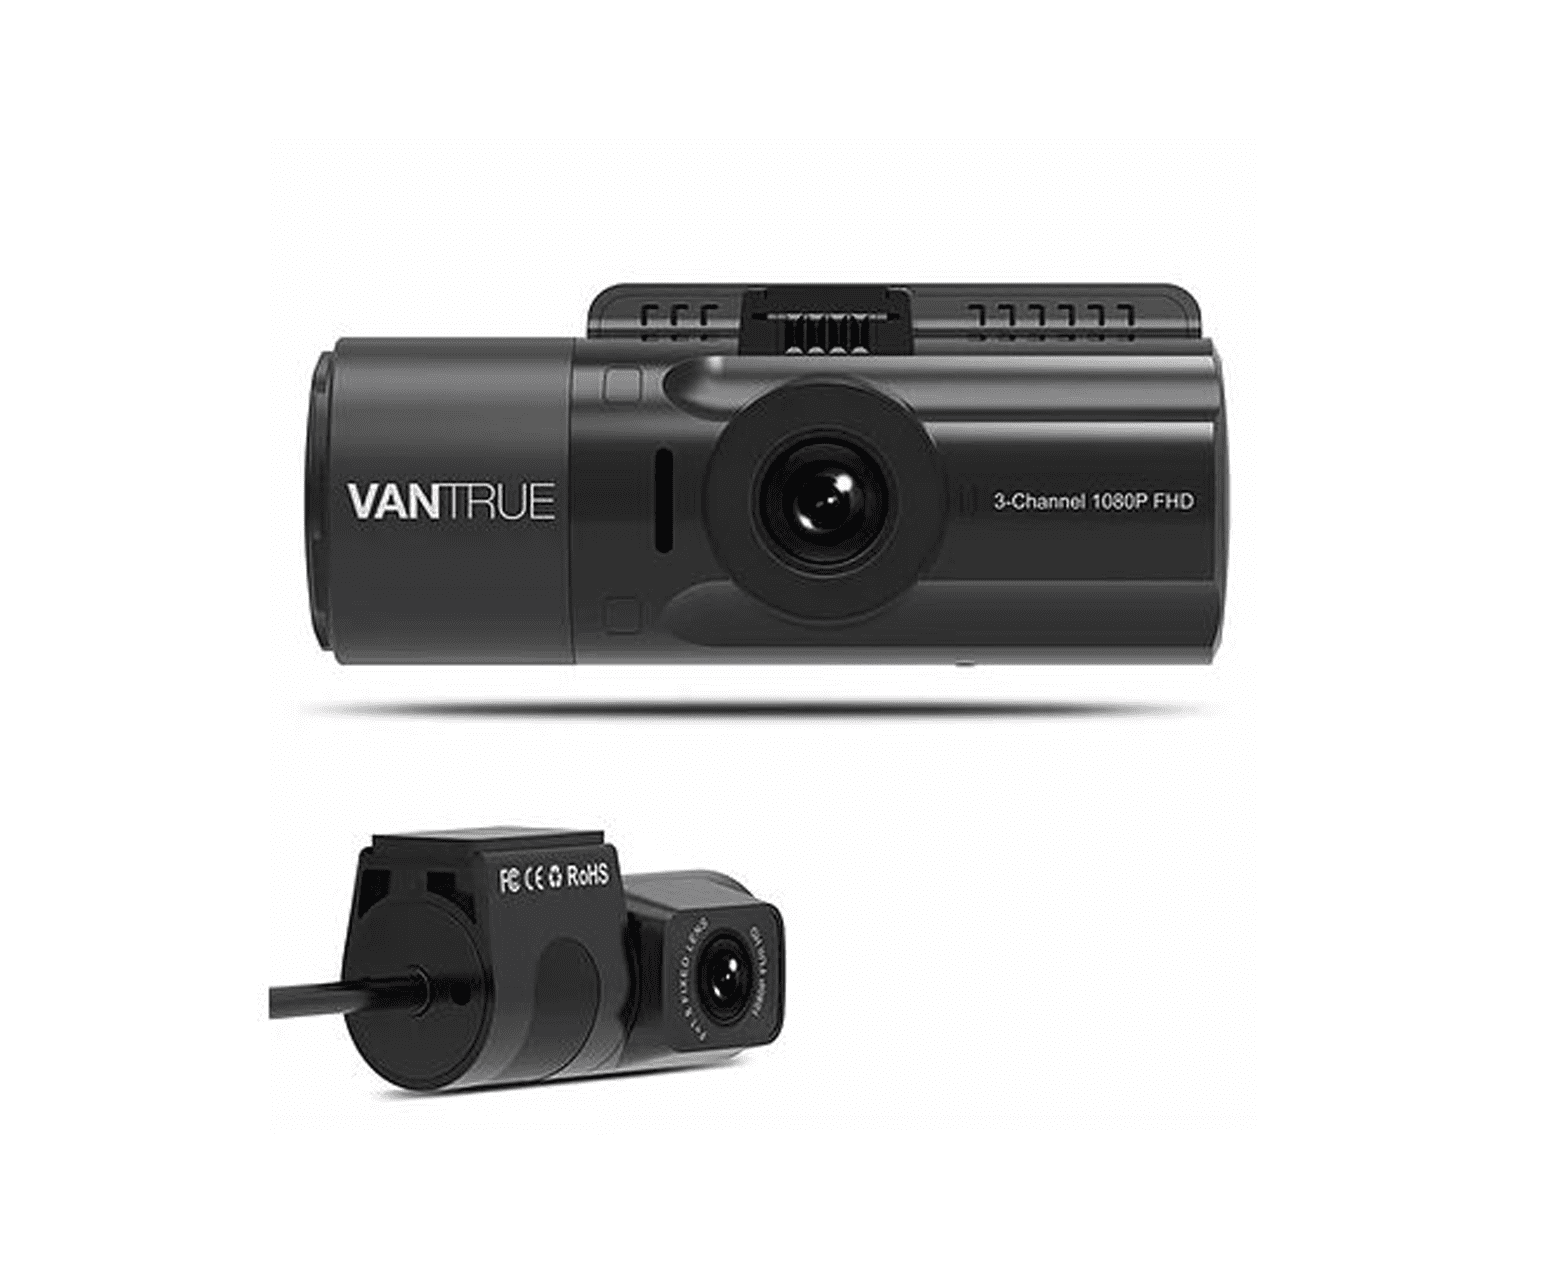 Vantrue N4 3 Channel 1440p Dashcam | mit Hardwire-Kit - Bundle